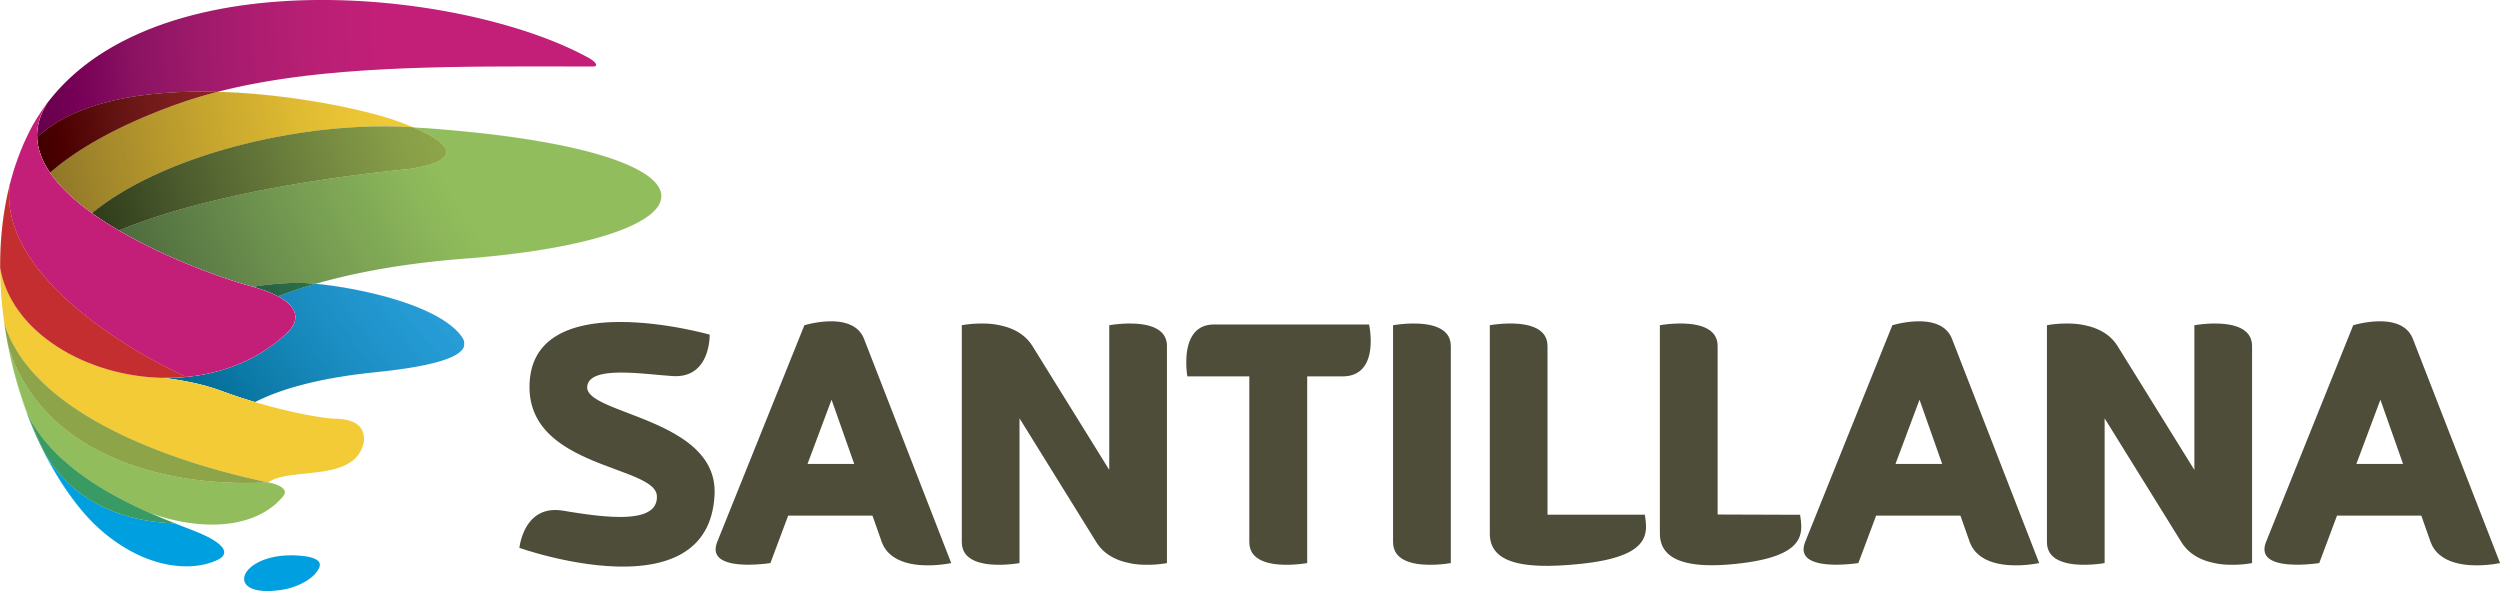 Santillana S.A. Logo